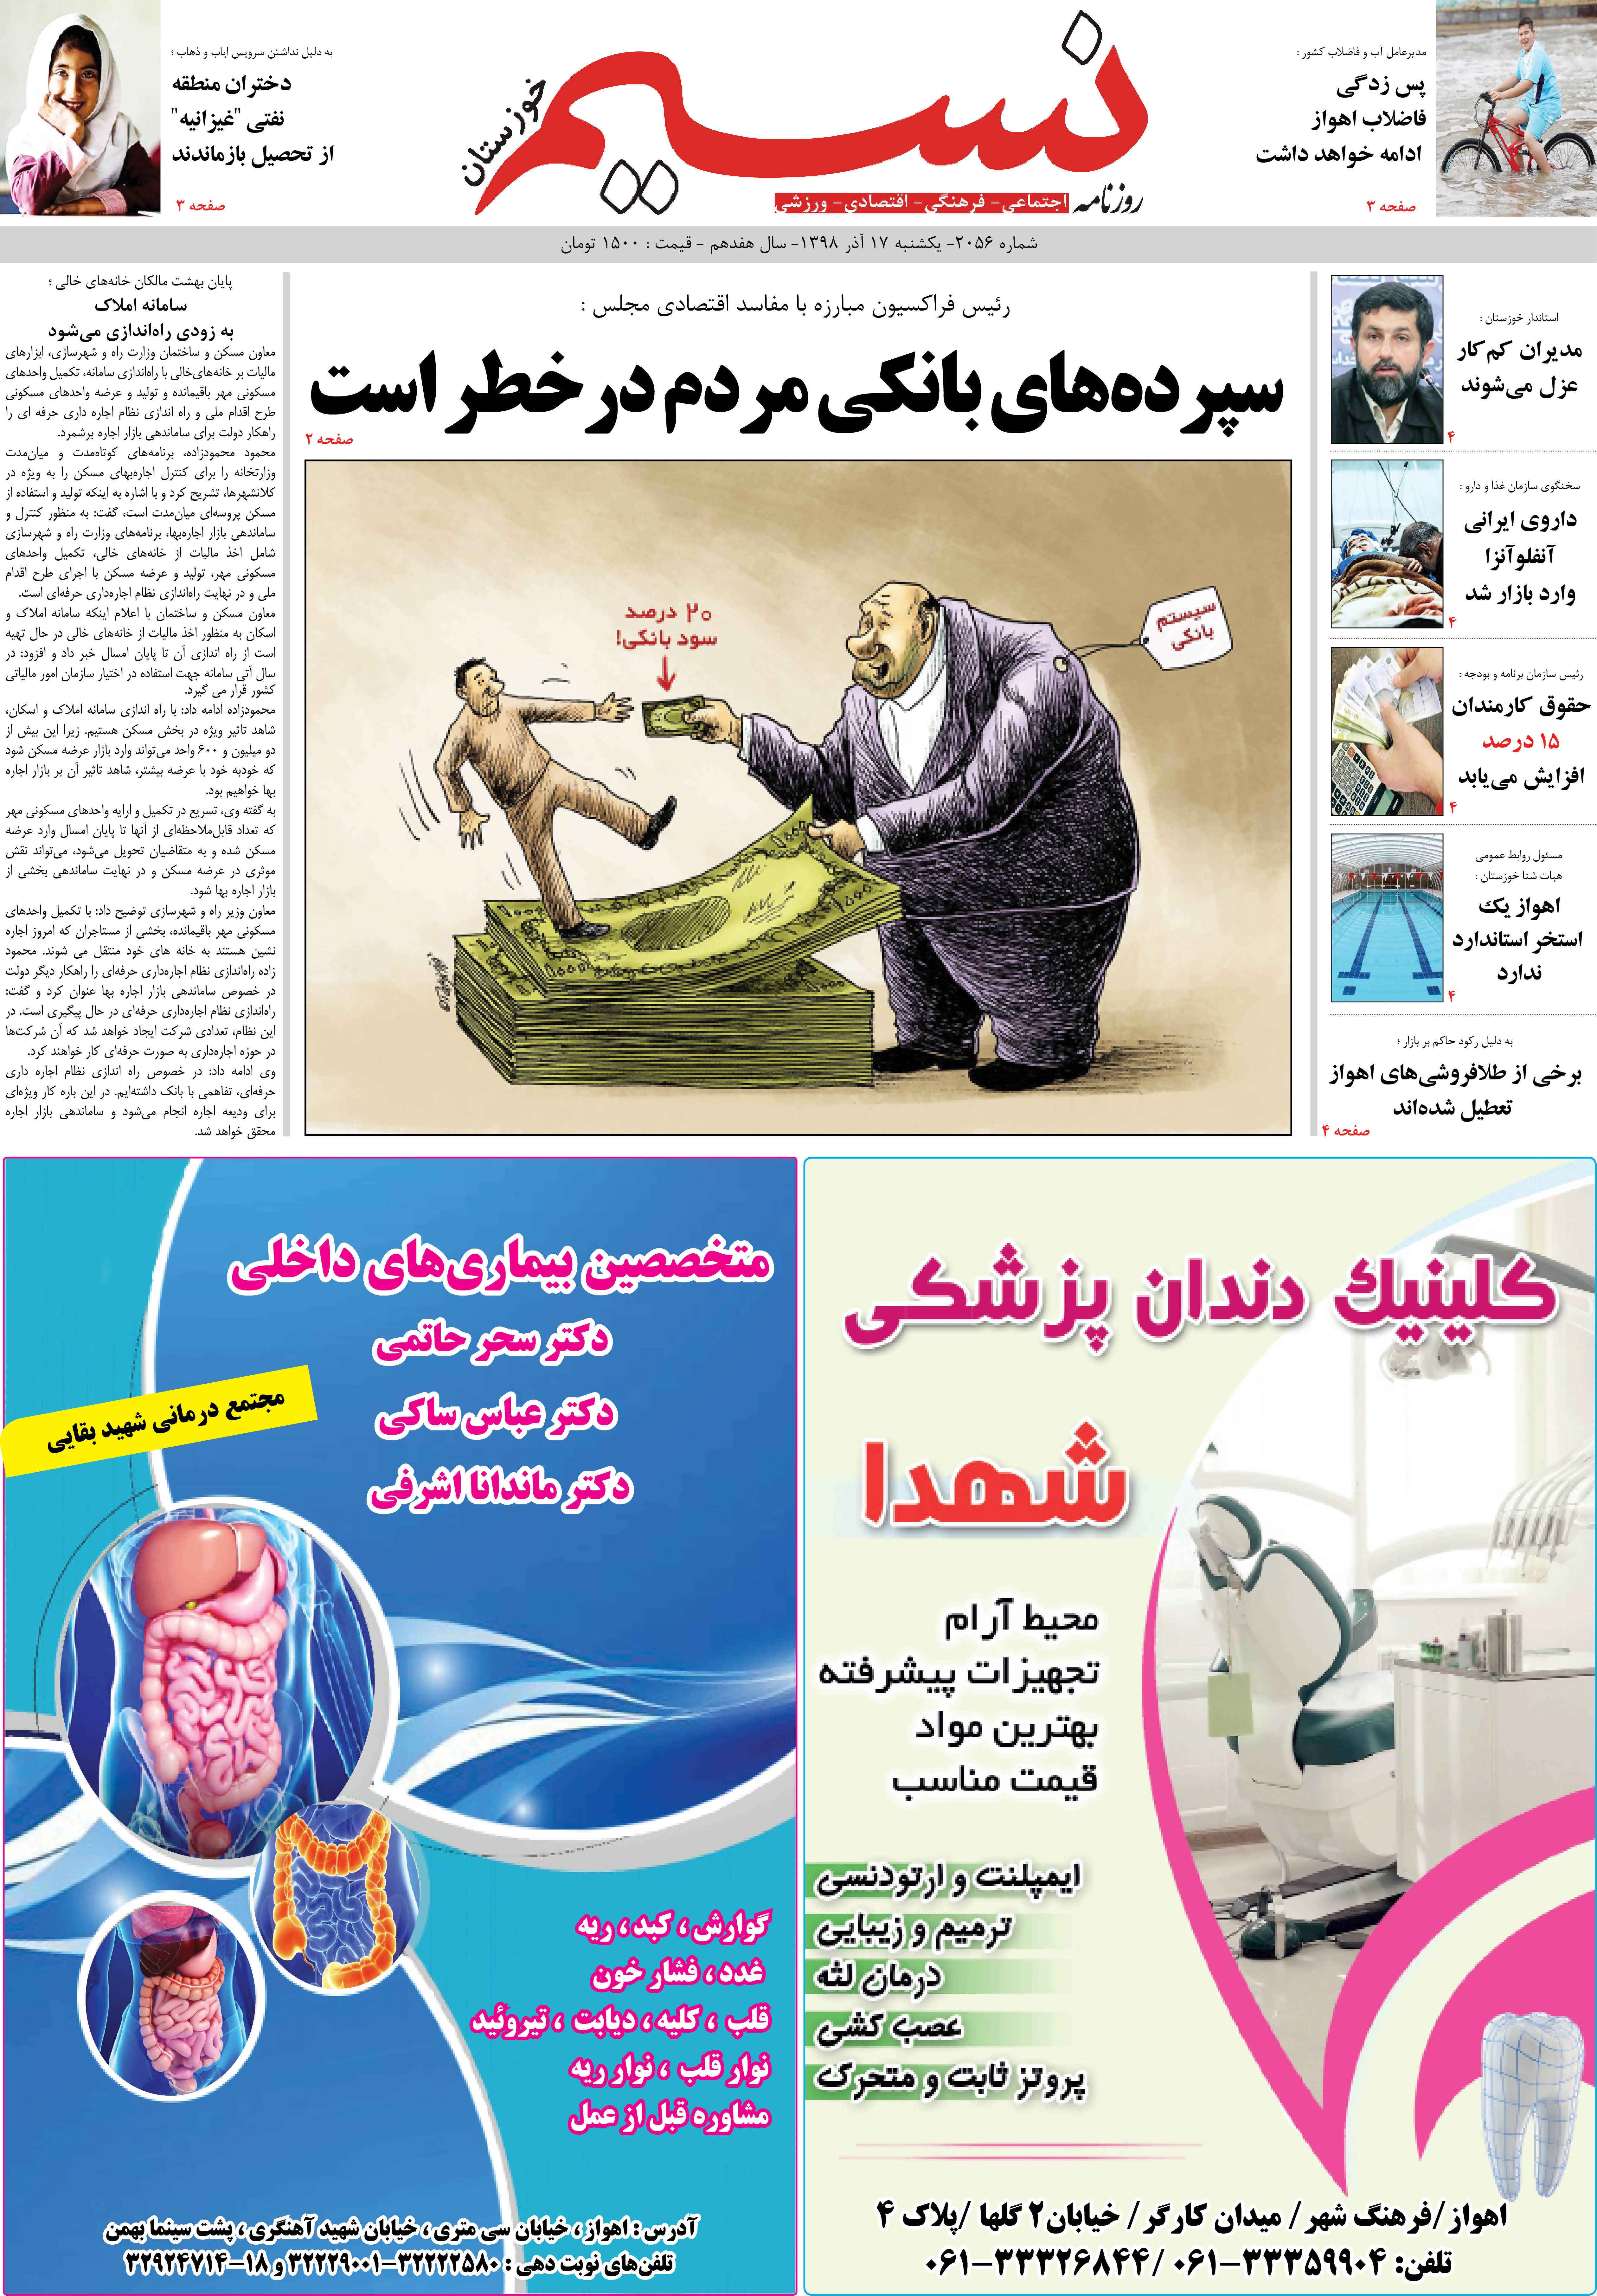 صفحه اصلی روزنامه نسیم شماره 2056 